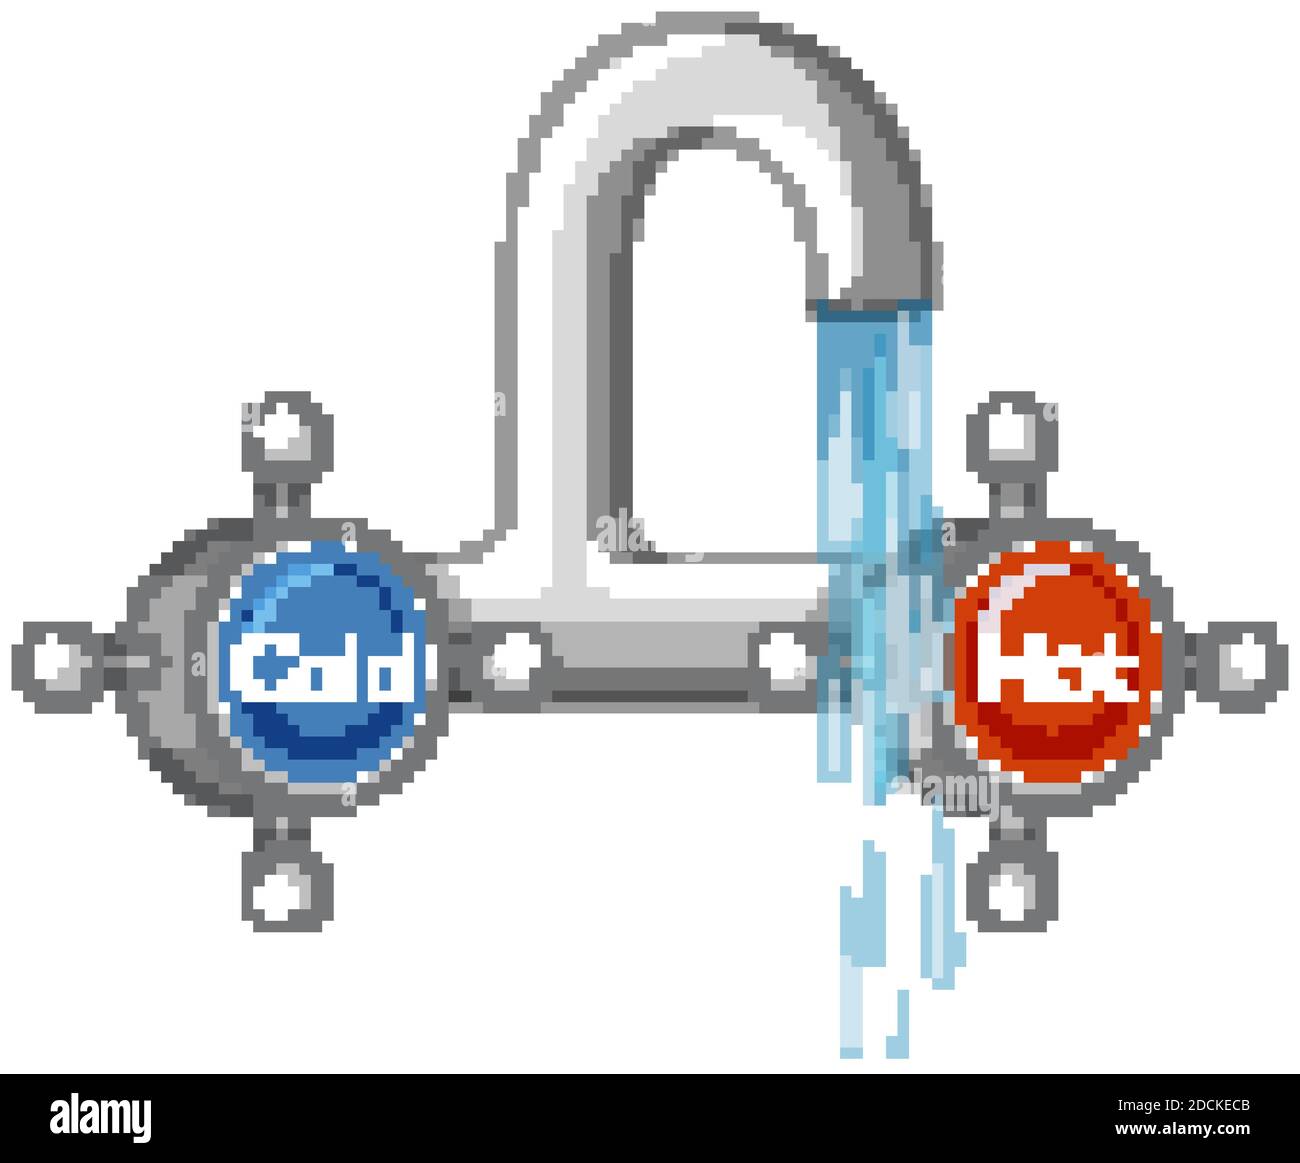 Acqua rubinetto caldo e freddo cartone animato stile illustrazione isolata  Immagine e Vettoriale - Alamy